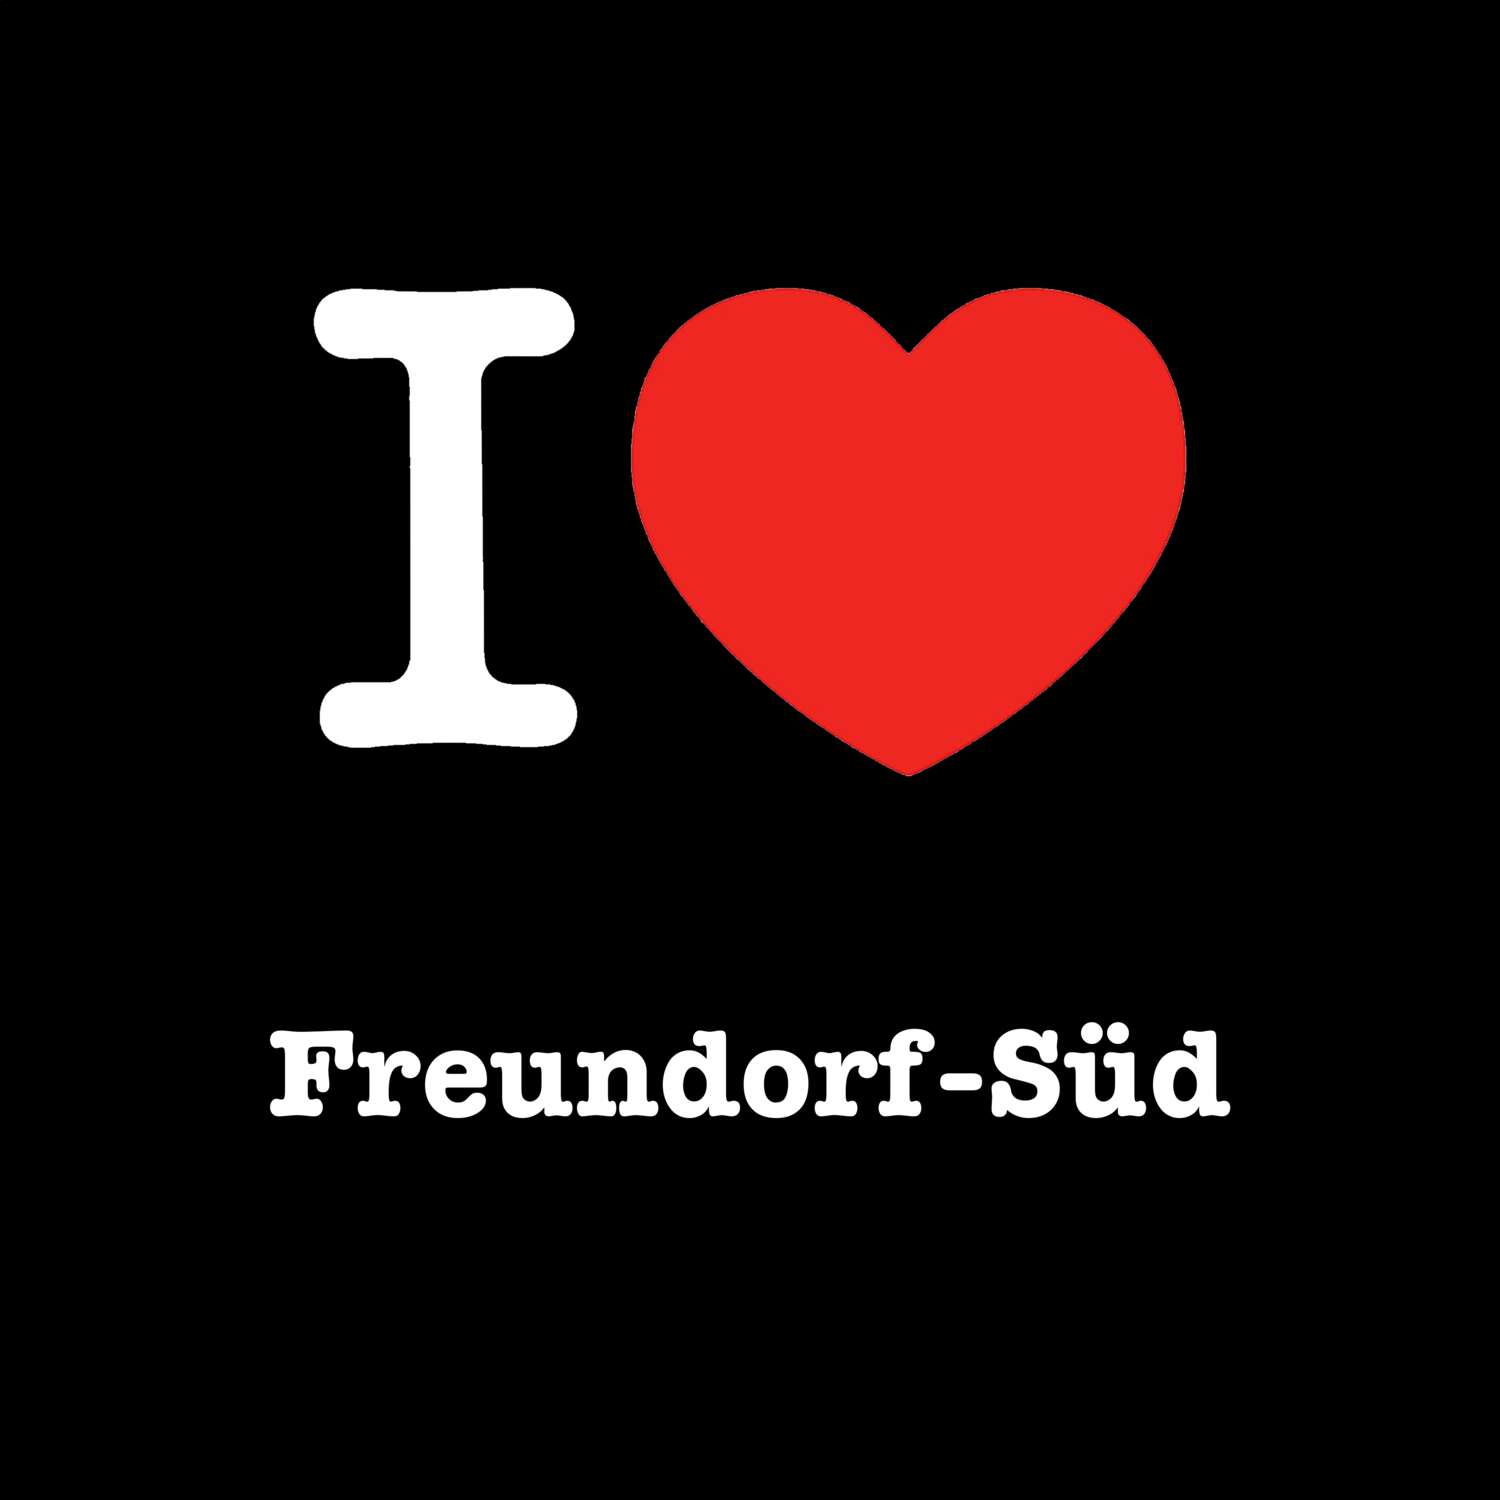 Freundorf-Süd T-Shirt »I love«